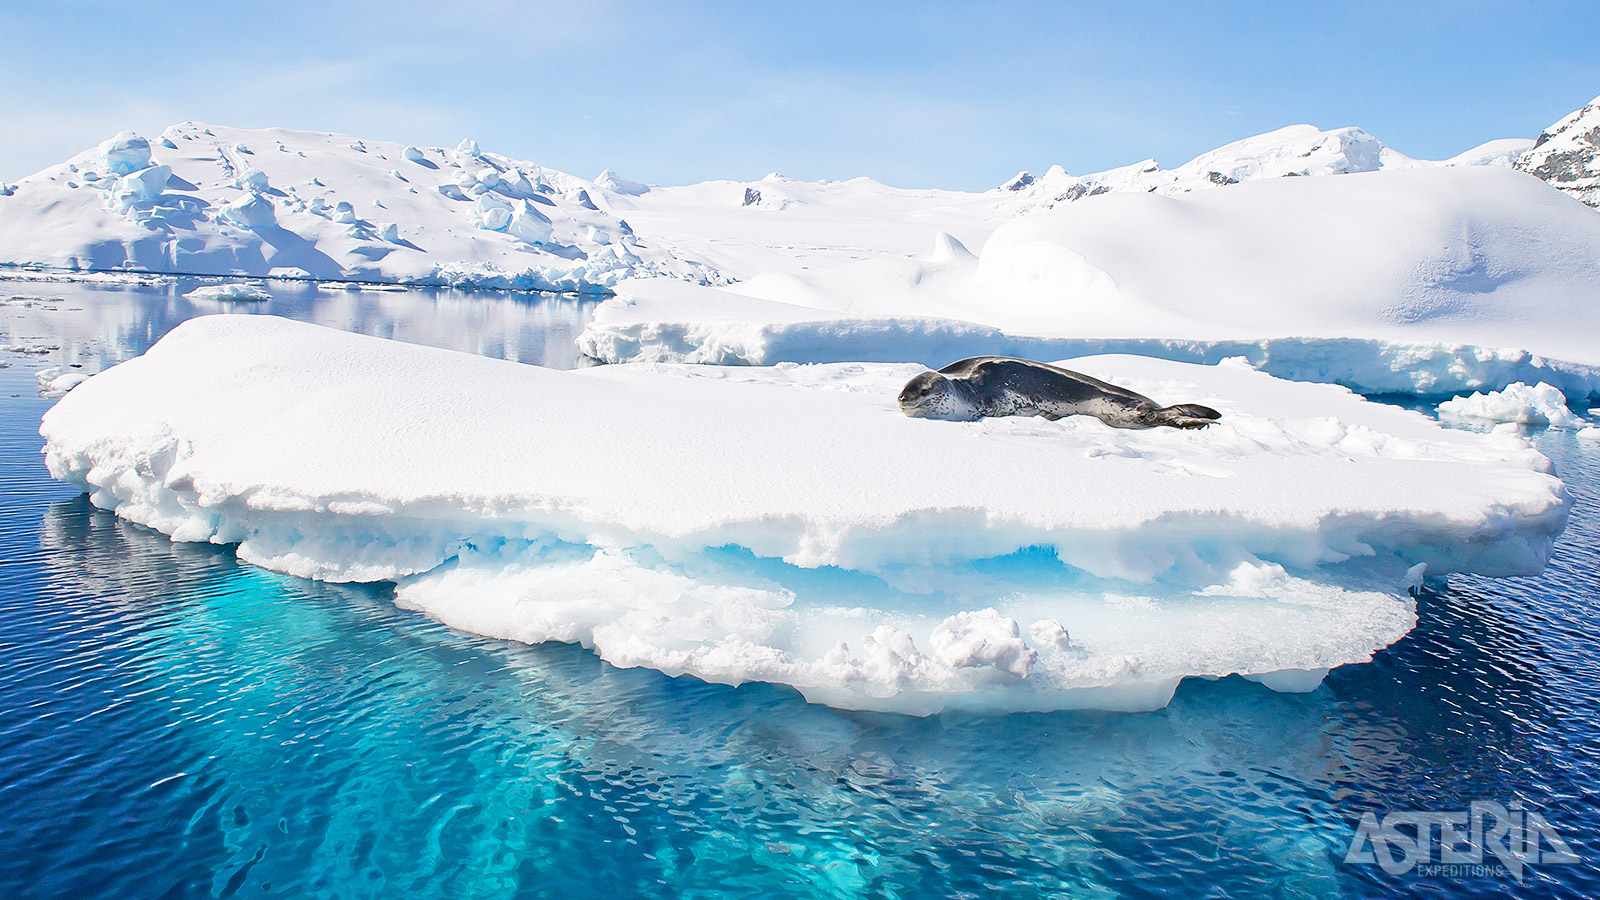 Zeeluipaarden leven langs de randen van het pakijs in de wateren rond Antarctica en jagen vooral op pinguïns